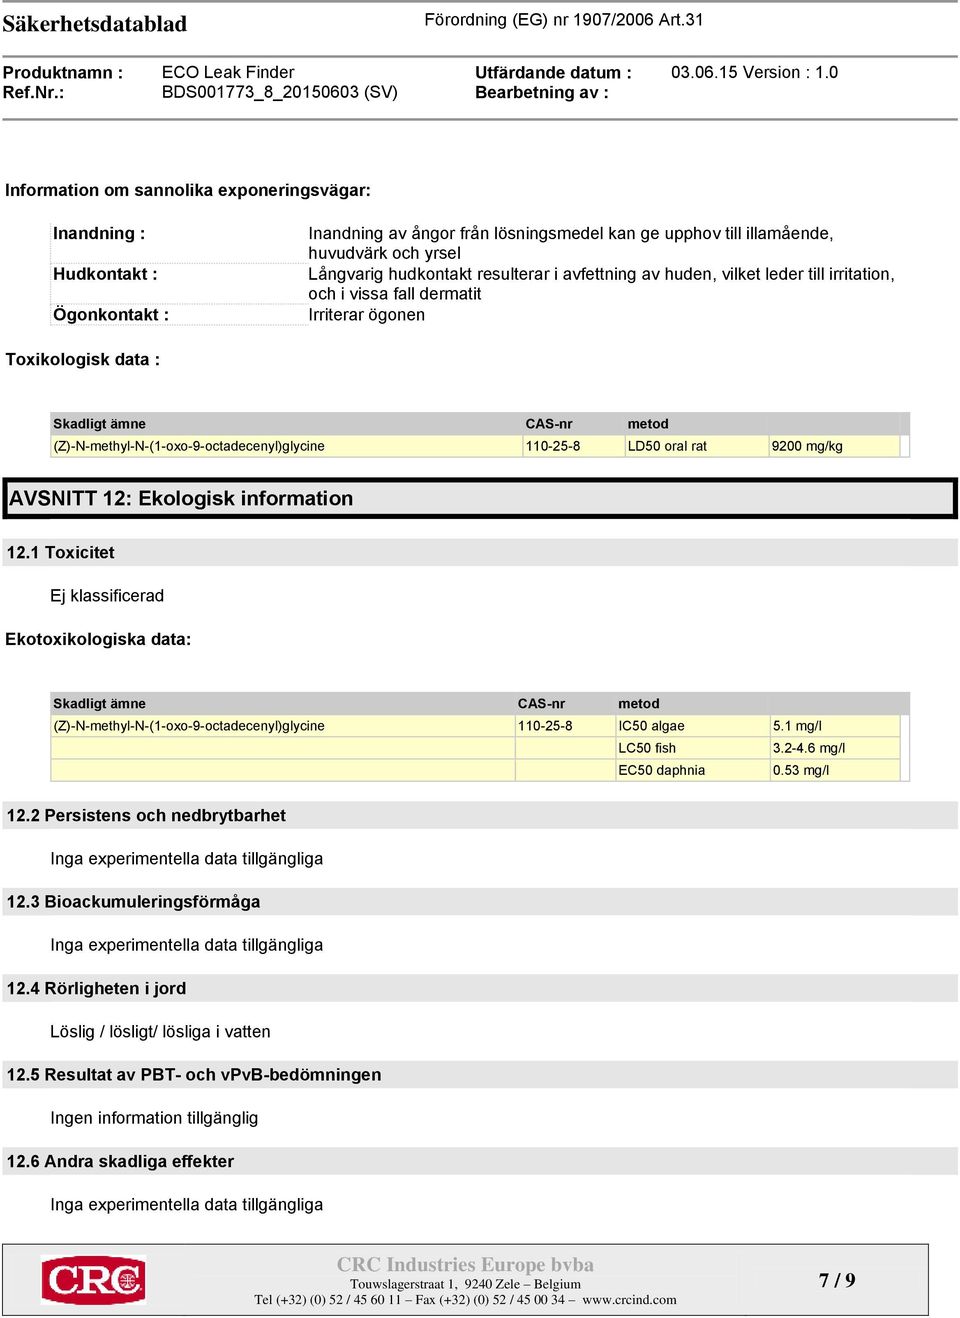 110-25-8 LD50 oral rat 9200 mg/kg AVSNITT 12: Ekologisk information 12.1 Toxicitet Ekotoxikologiska data: Skadligt ämne CAS-nr metod (Z)-N-methyl-N-(1-oxo-9-octadecenyl)glycine 110-25-8 IC50 algae 5.